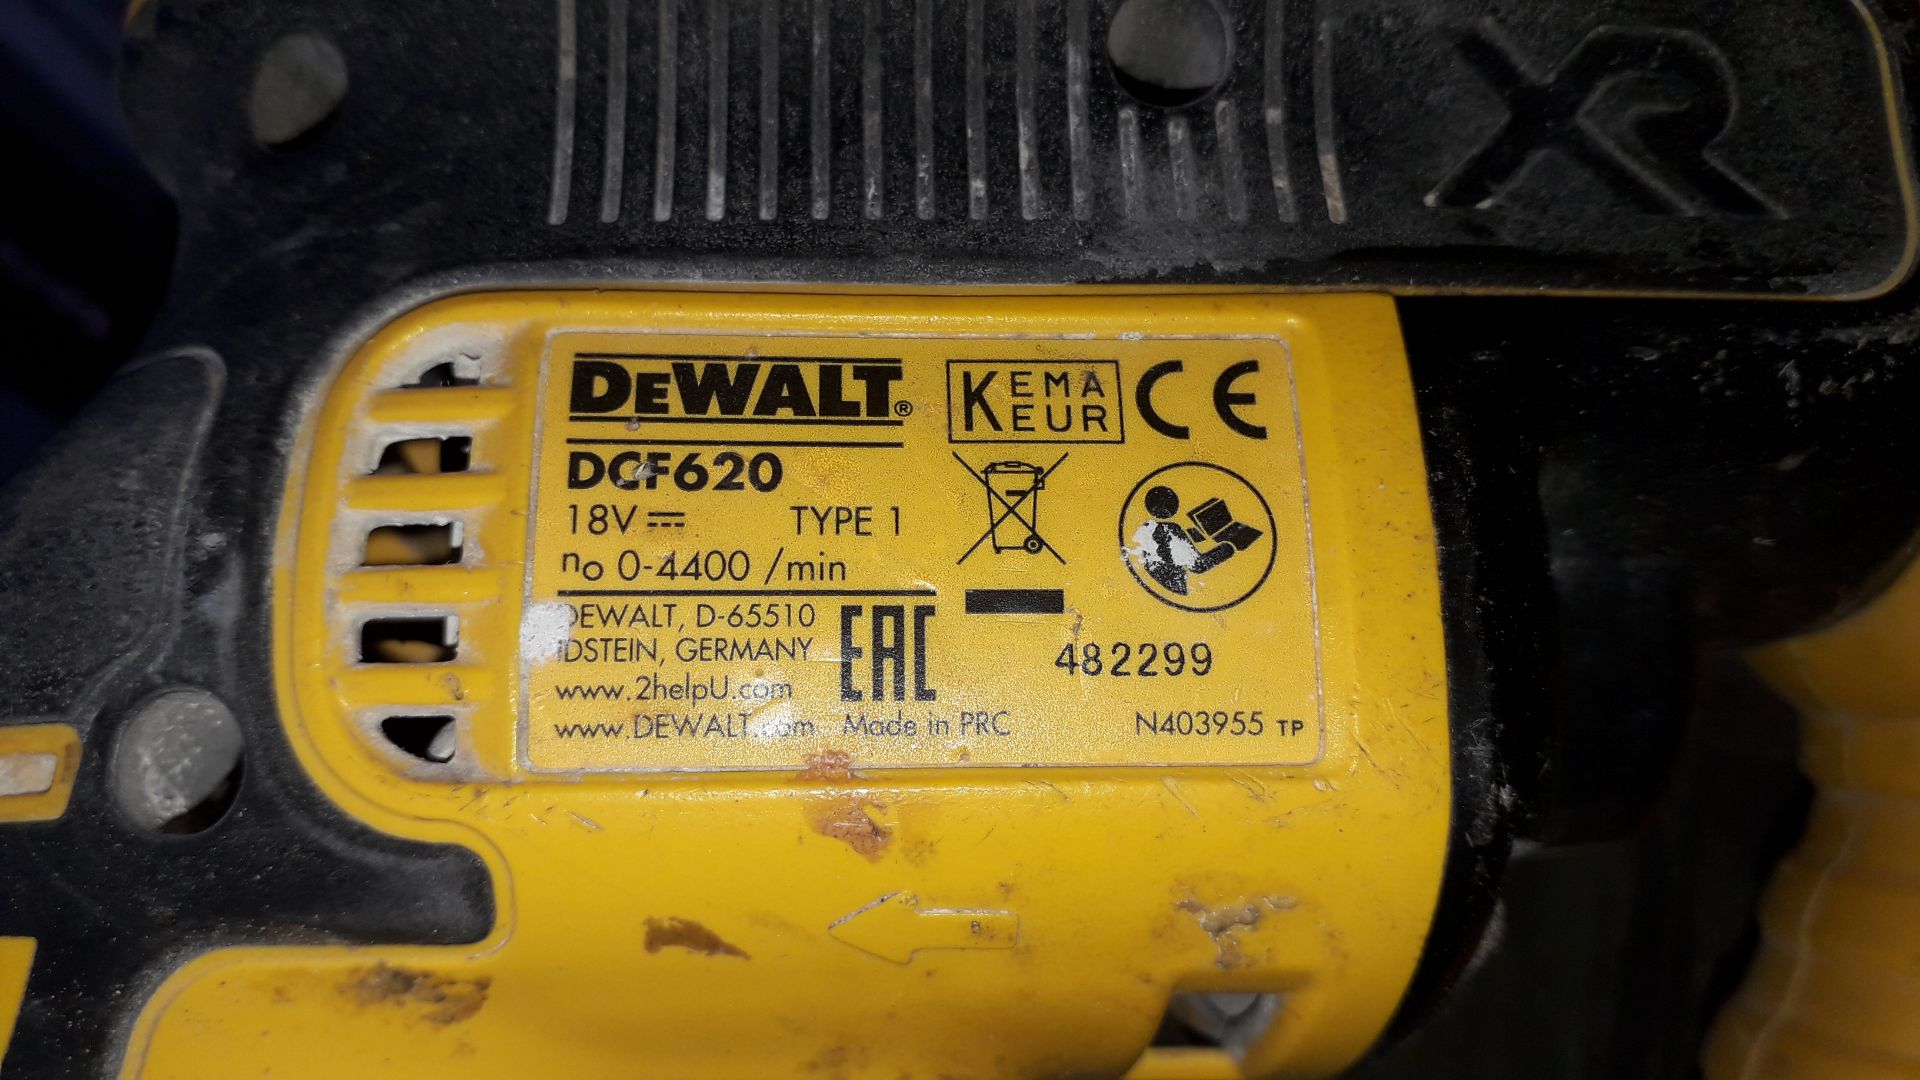 DeWalt DCF620 Cordless 18v Drywall Screwdriver, S/N 482299 (Without Battery) and DeWalt DCF6201 - Image 4 of 4